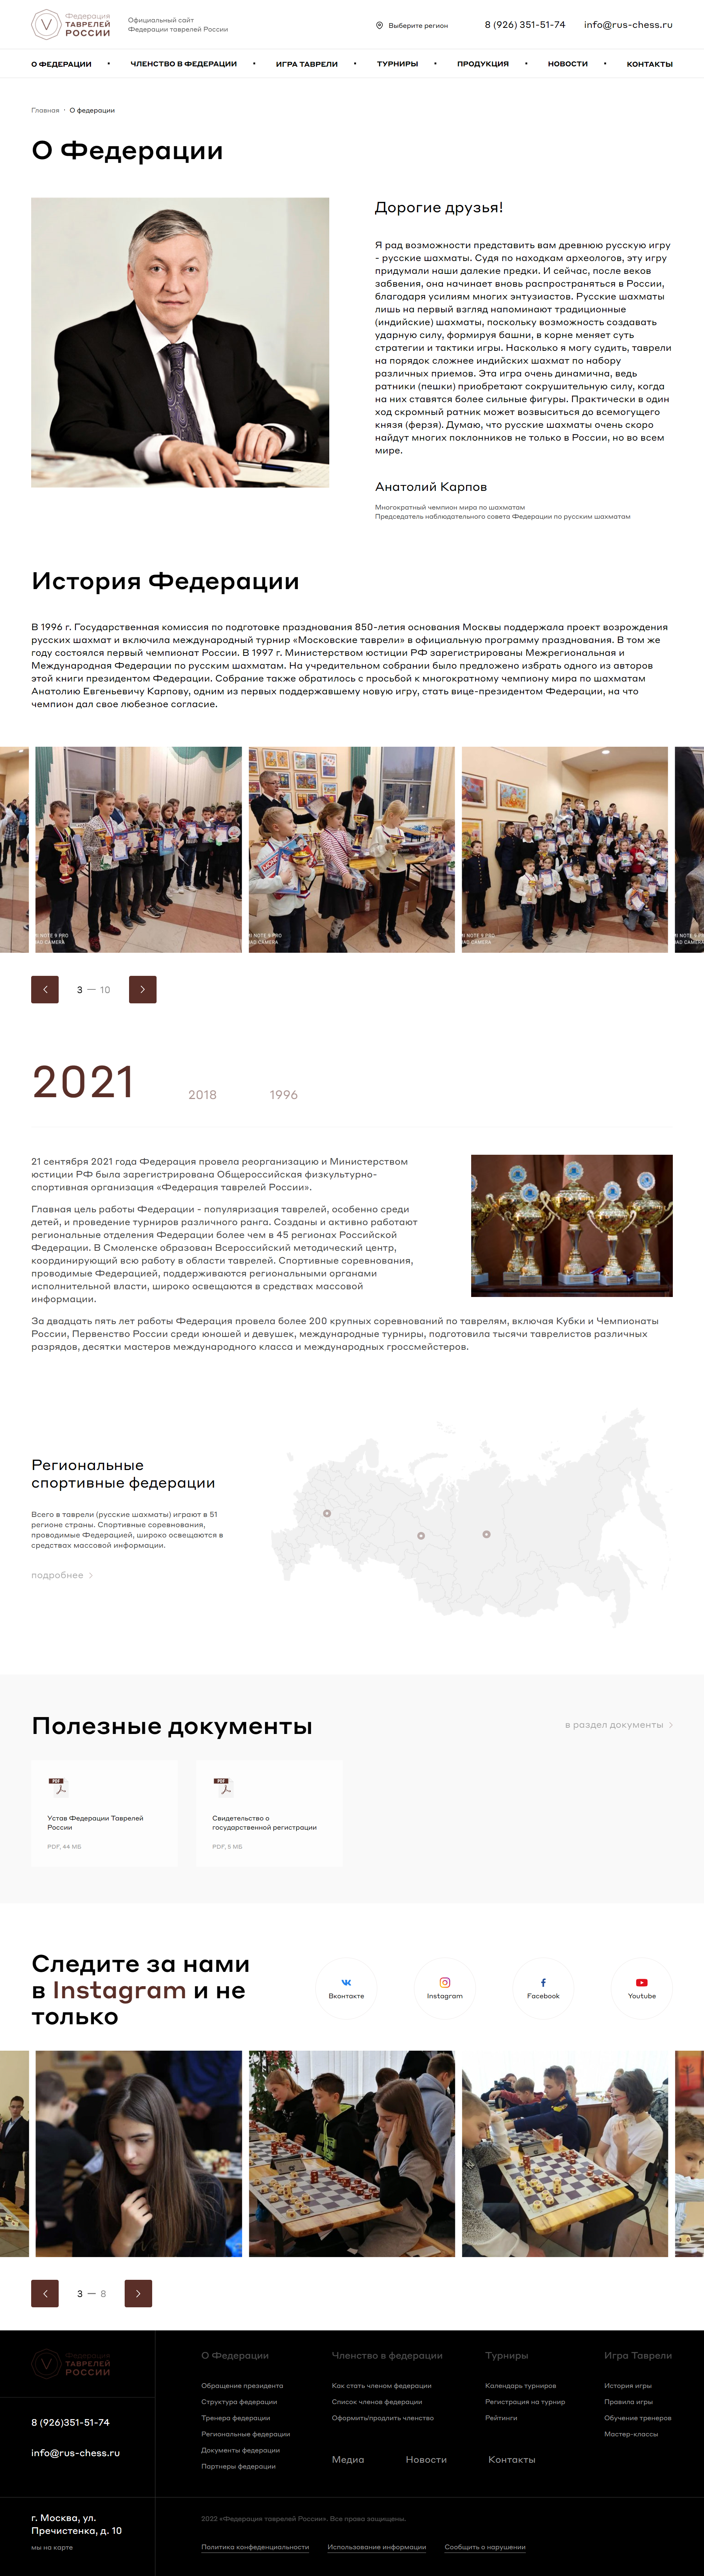 официальный сайт федерации таврелей россии